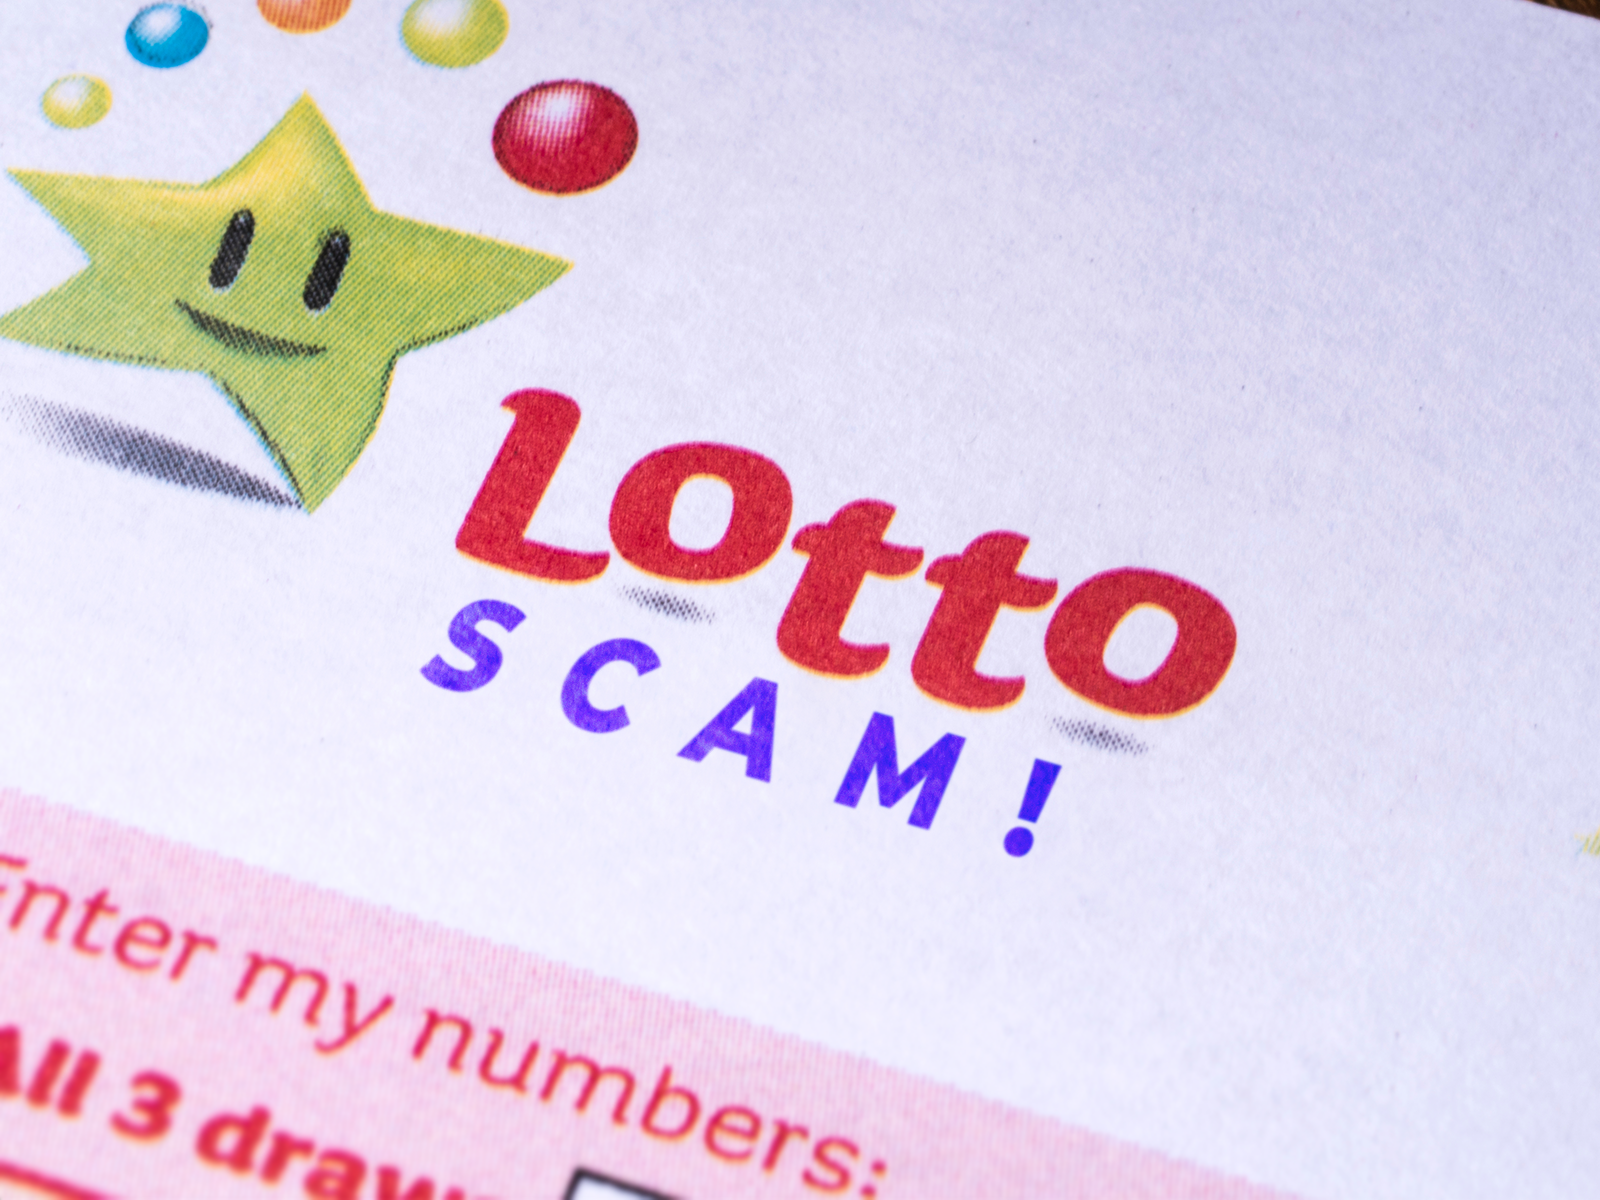 Lotto scam